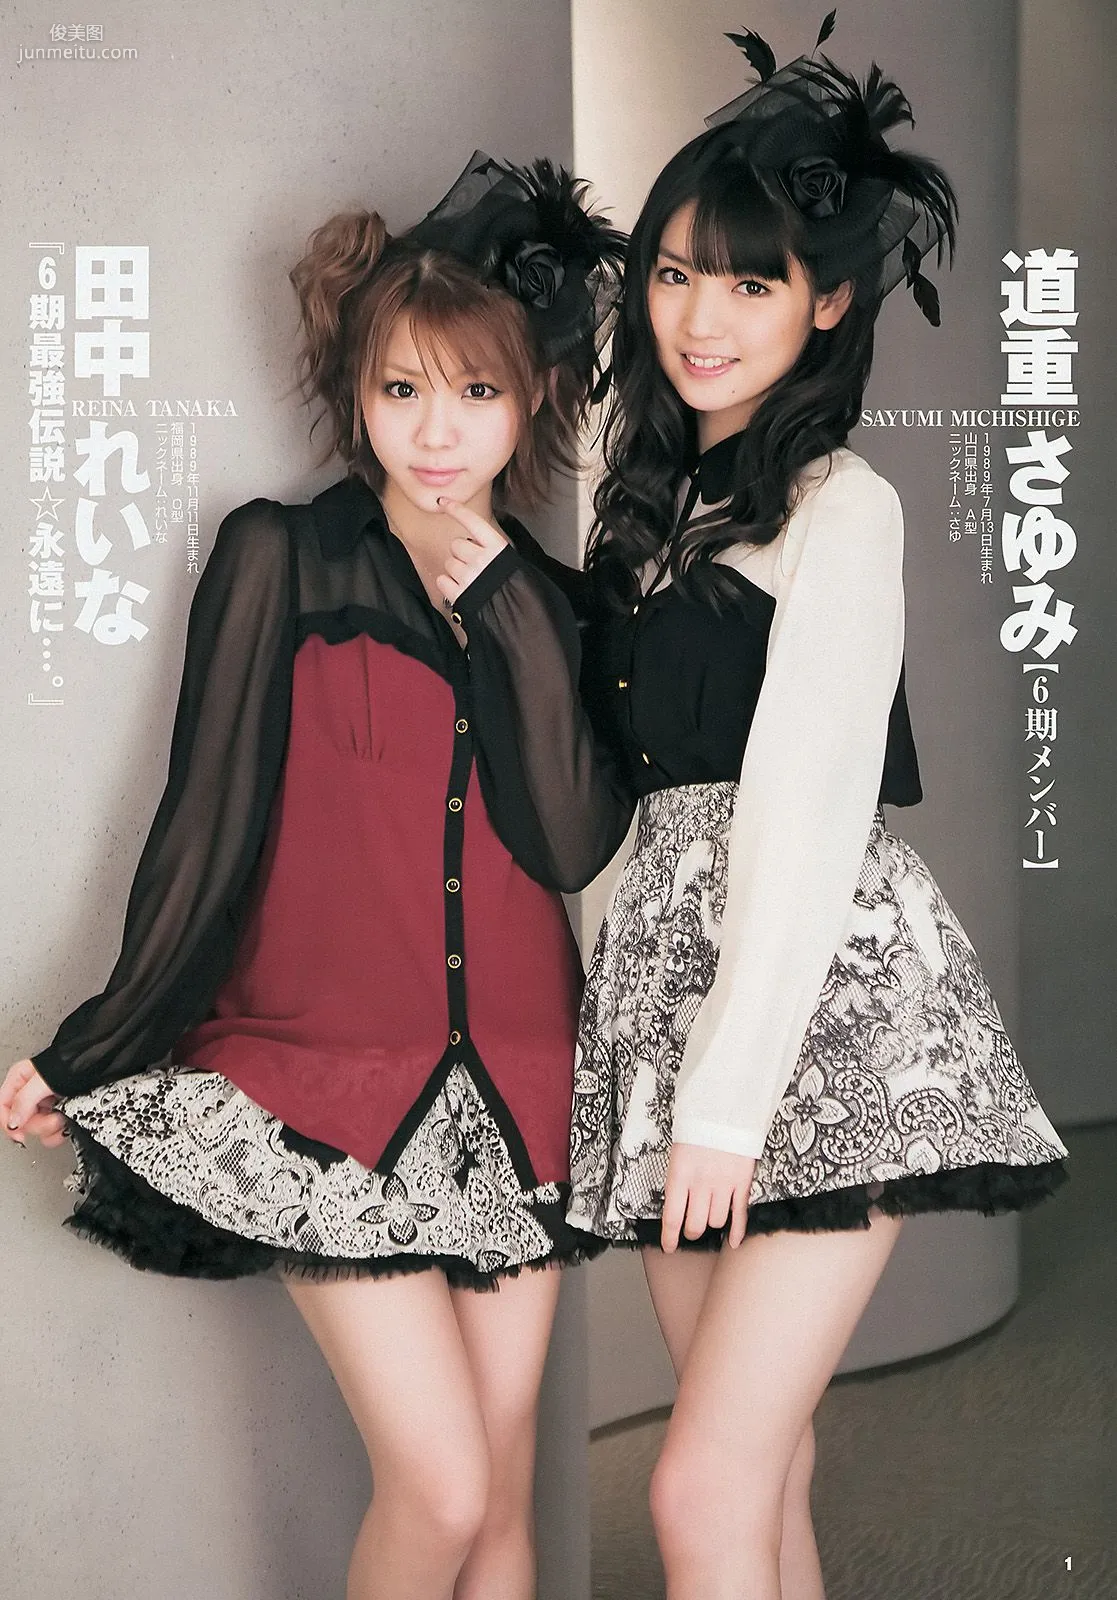 モーニング娘。 西内まりや [Weekly Young Jump] 2013年No.18 写真杂志2